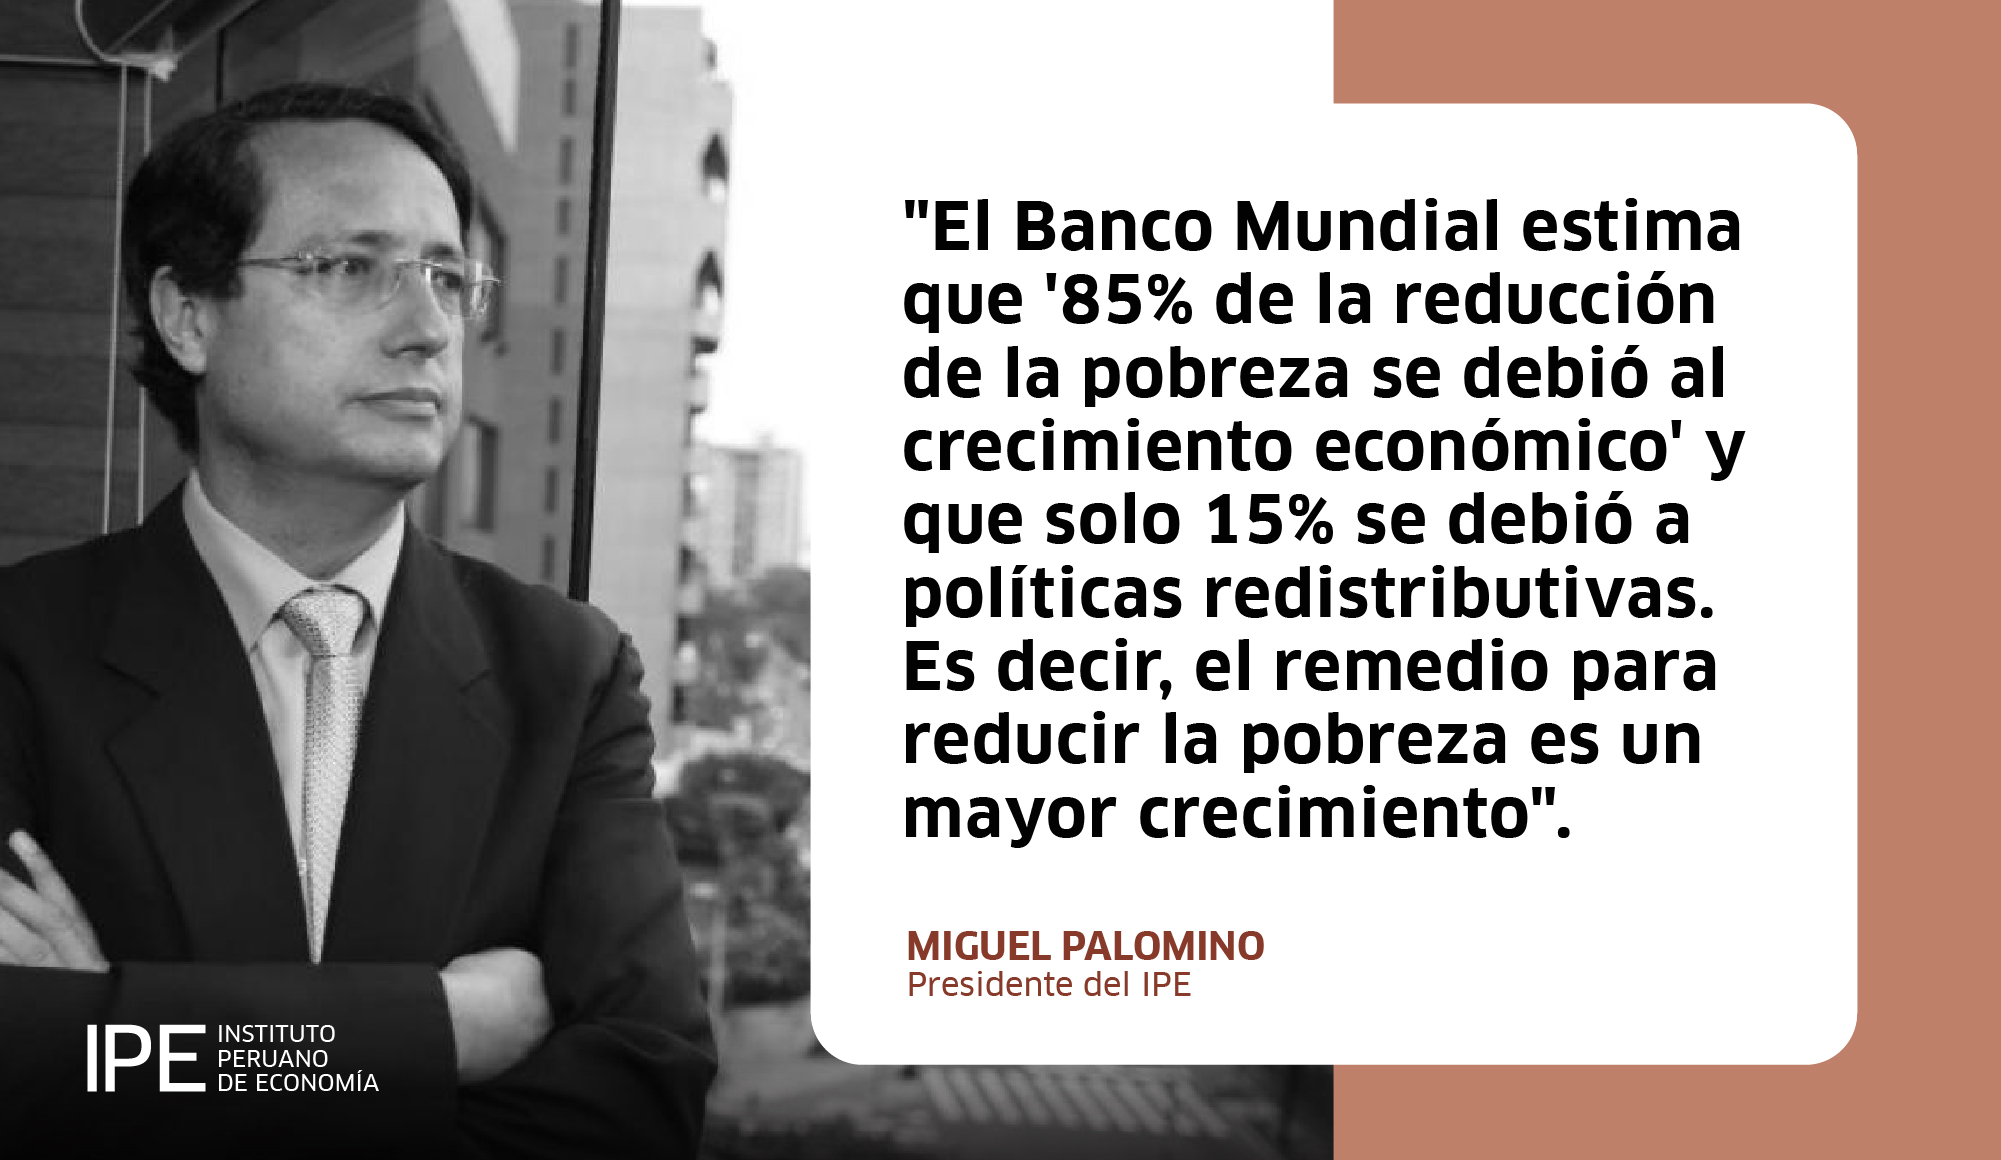 pobres, pobreza, Miguel Palomino, Banco Mundial